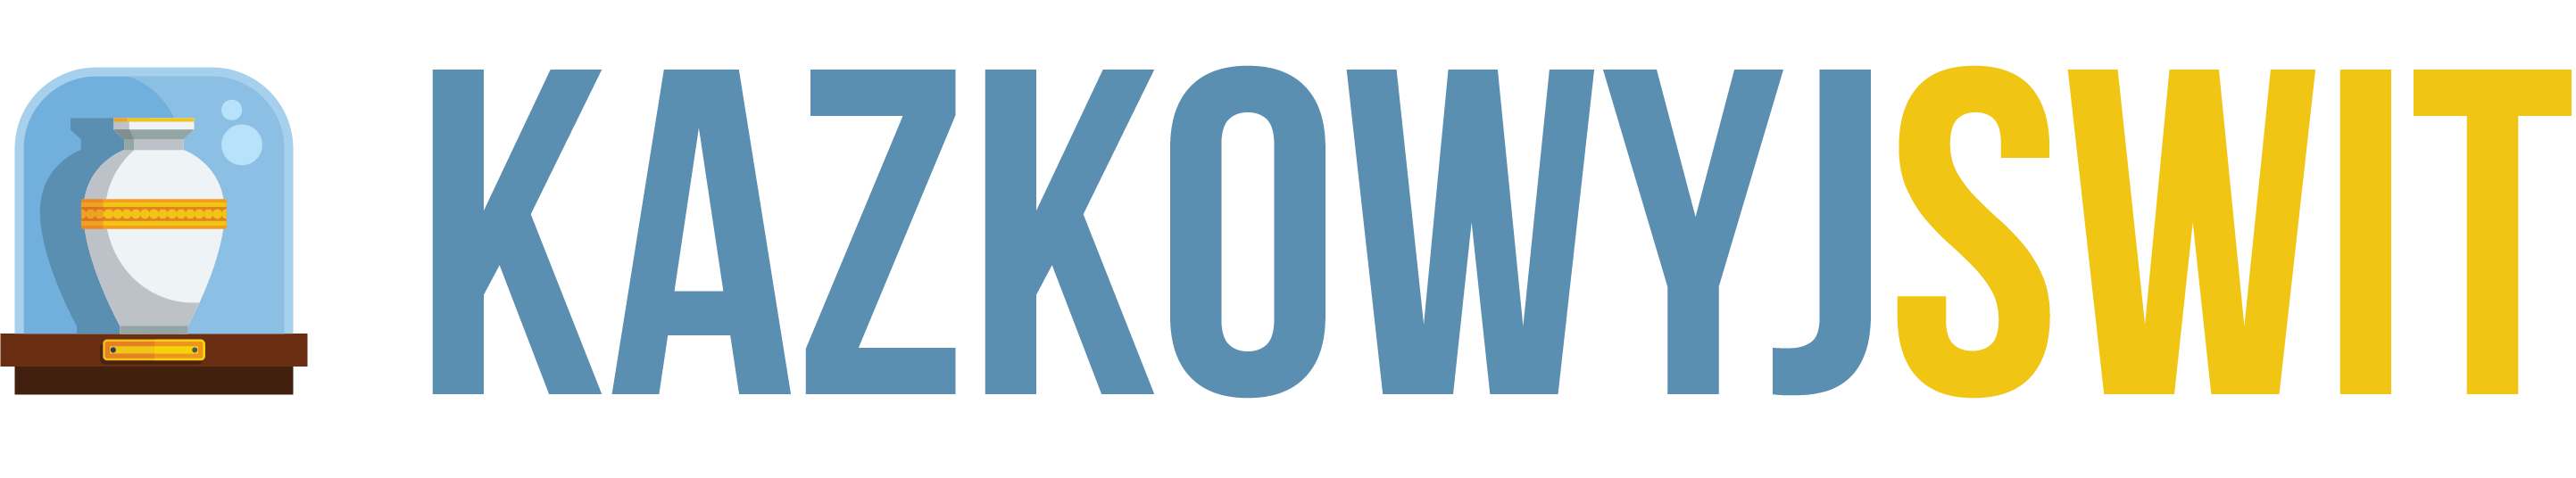 Logo kazkowyjswit.pl